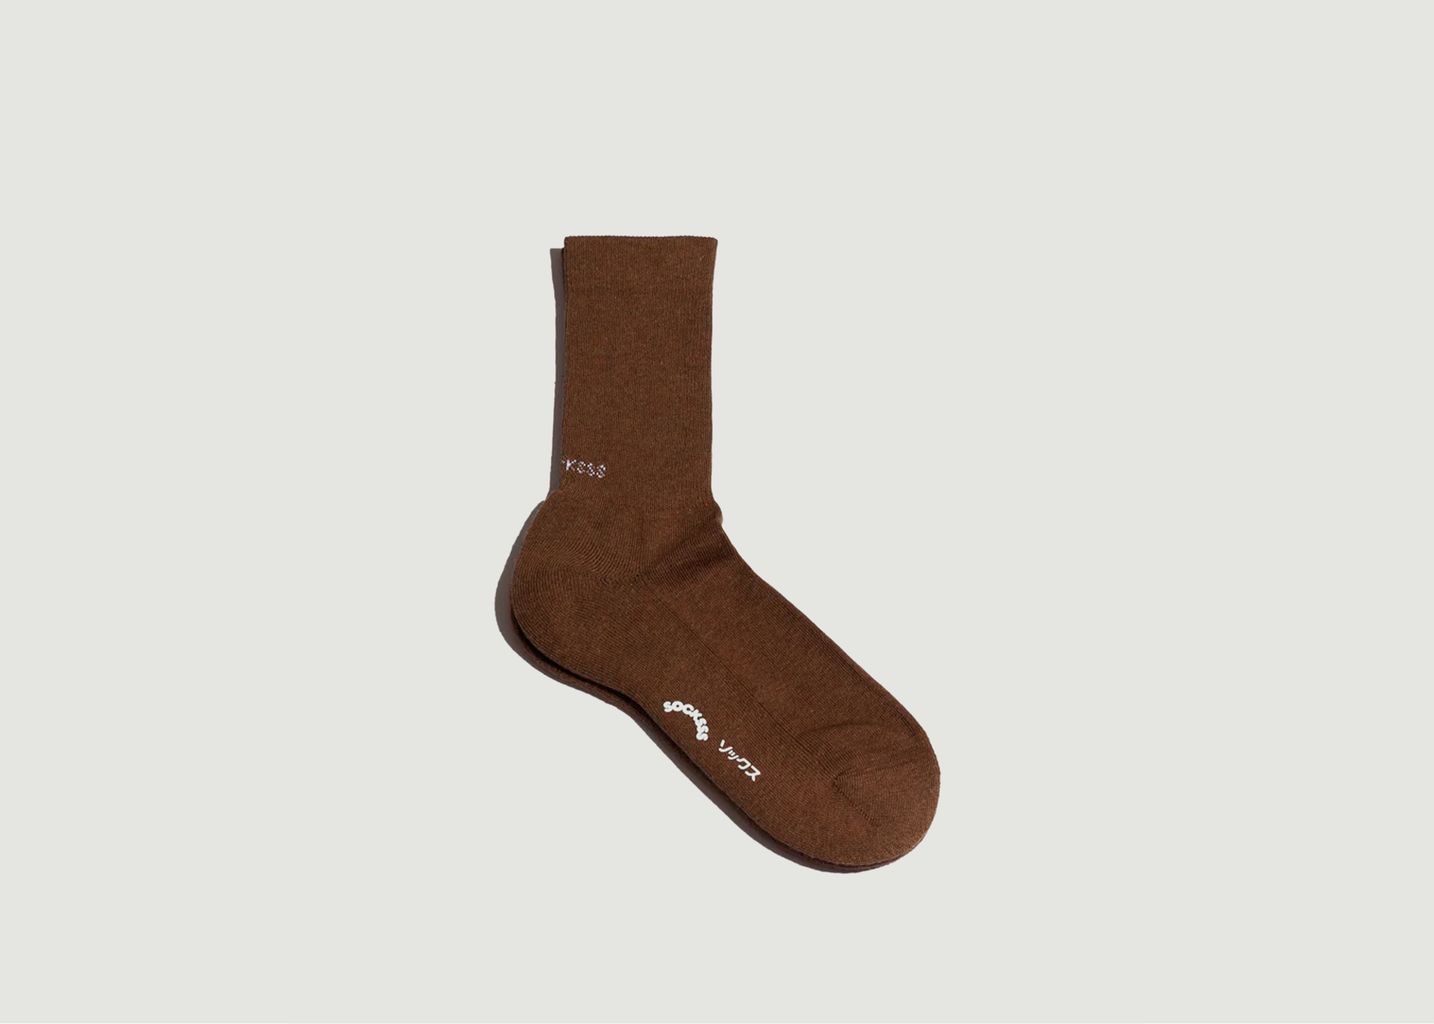 Golden Brown Organic Cotton Socks - Socksss